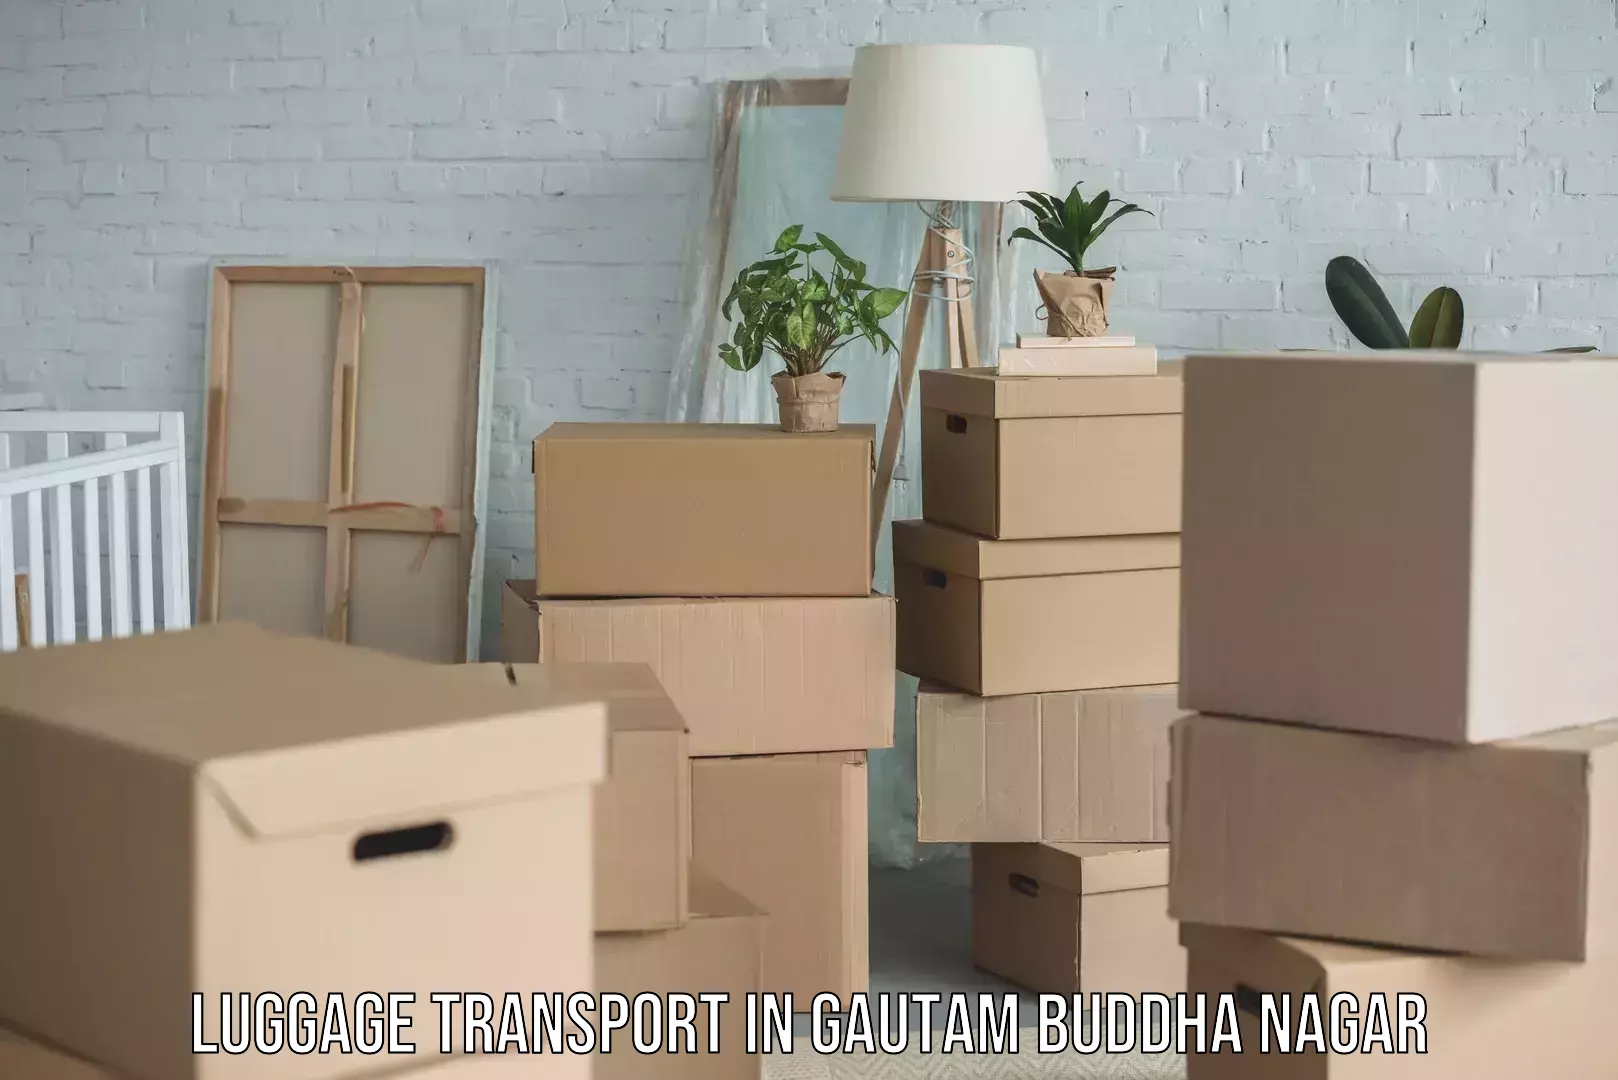 Luggage shipping consultation in Gautam Buddha Nagar